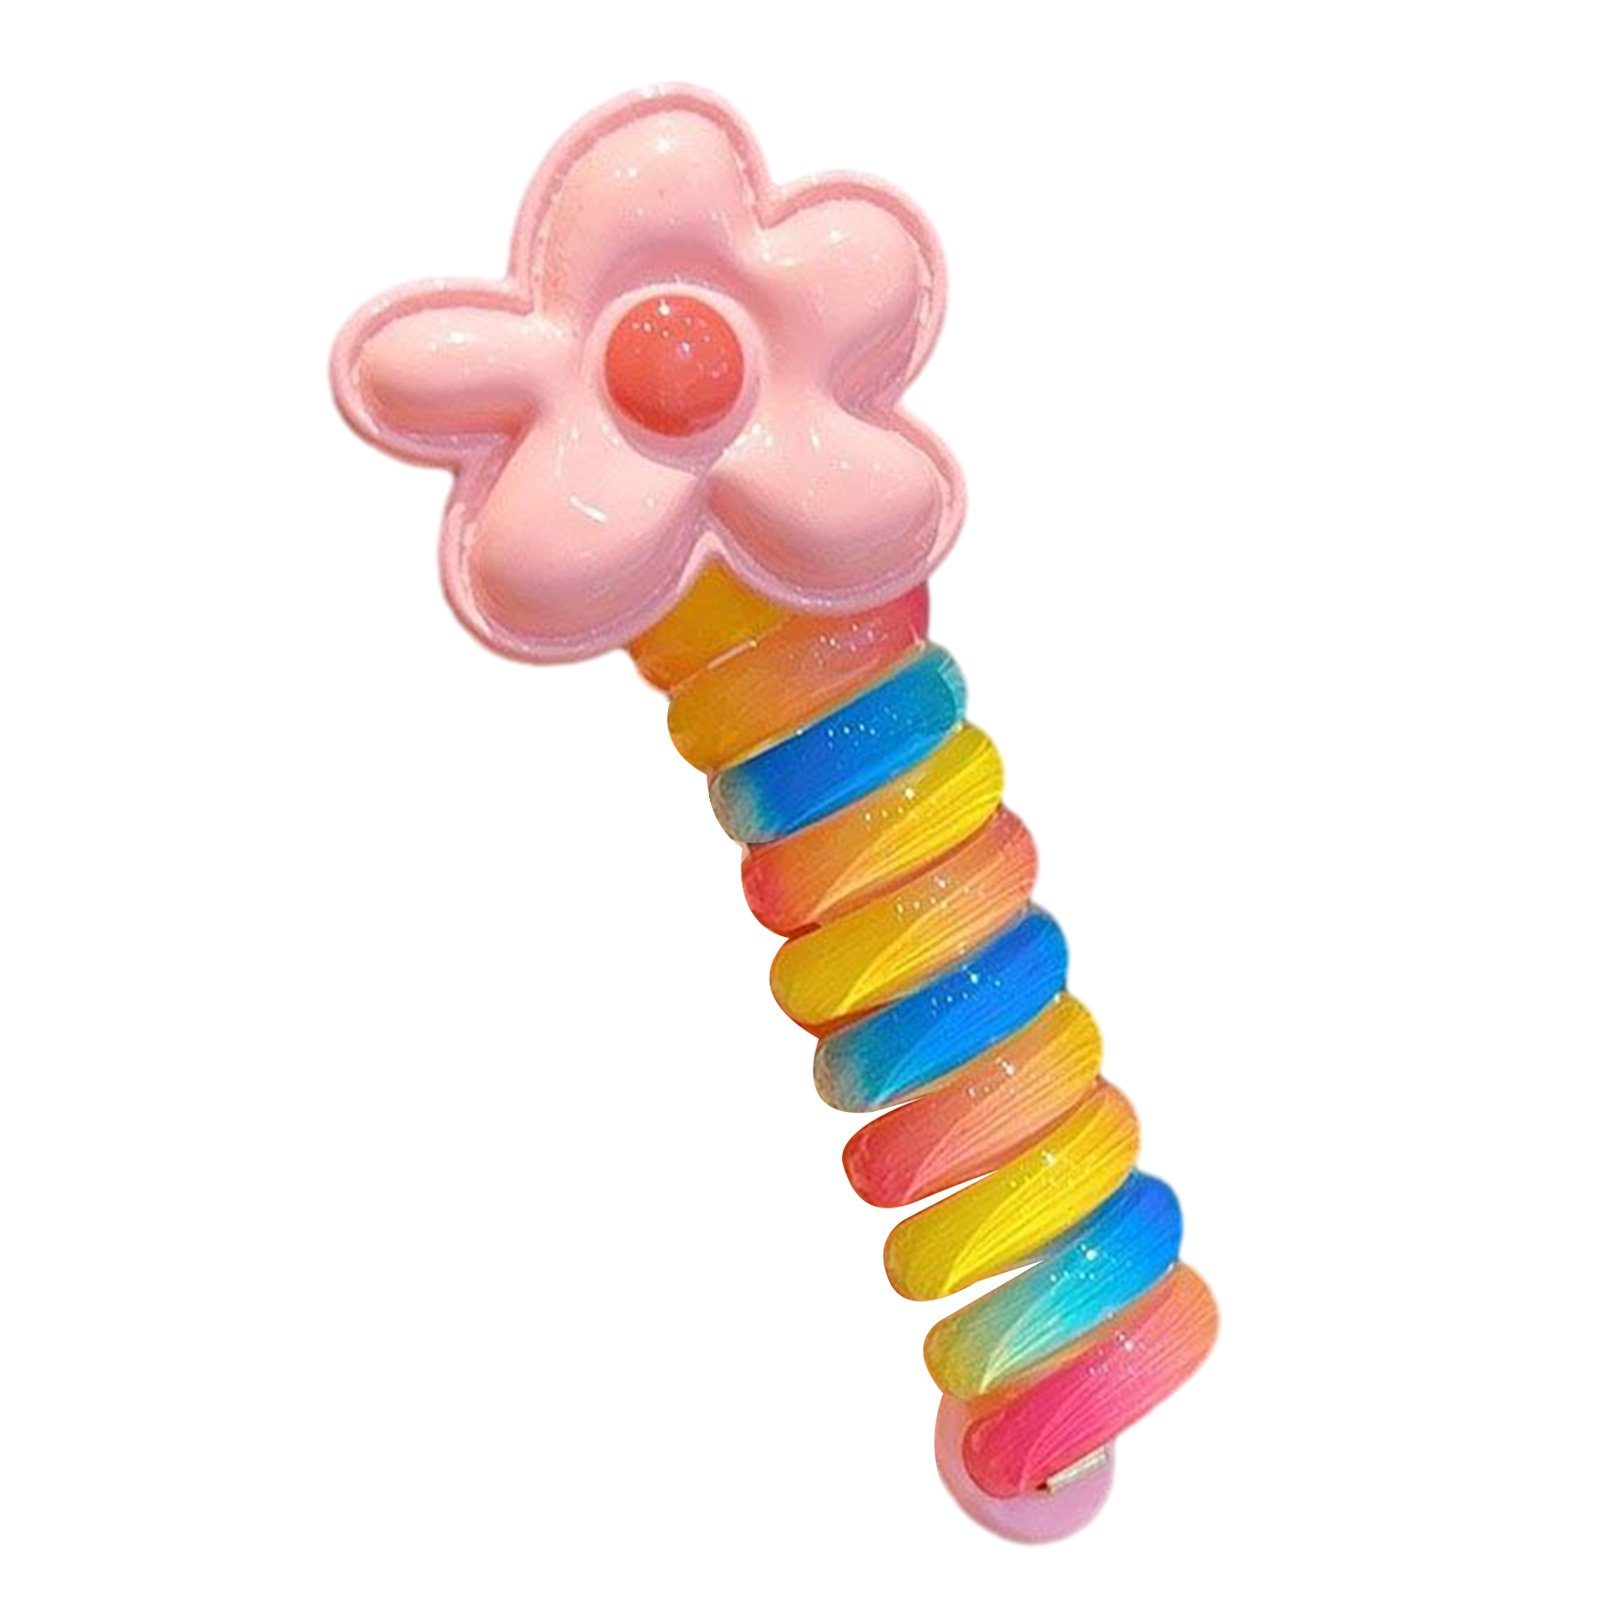 Blusmart Spiral-Haargummi Mädchen Bunte Schleife Telefonkabel Haarbänder Wiederverwendbare DIY, Spiral-Haargummi pink flower